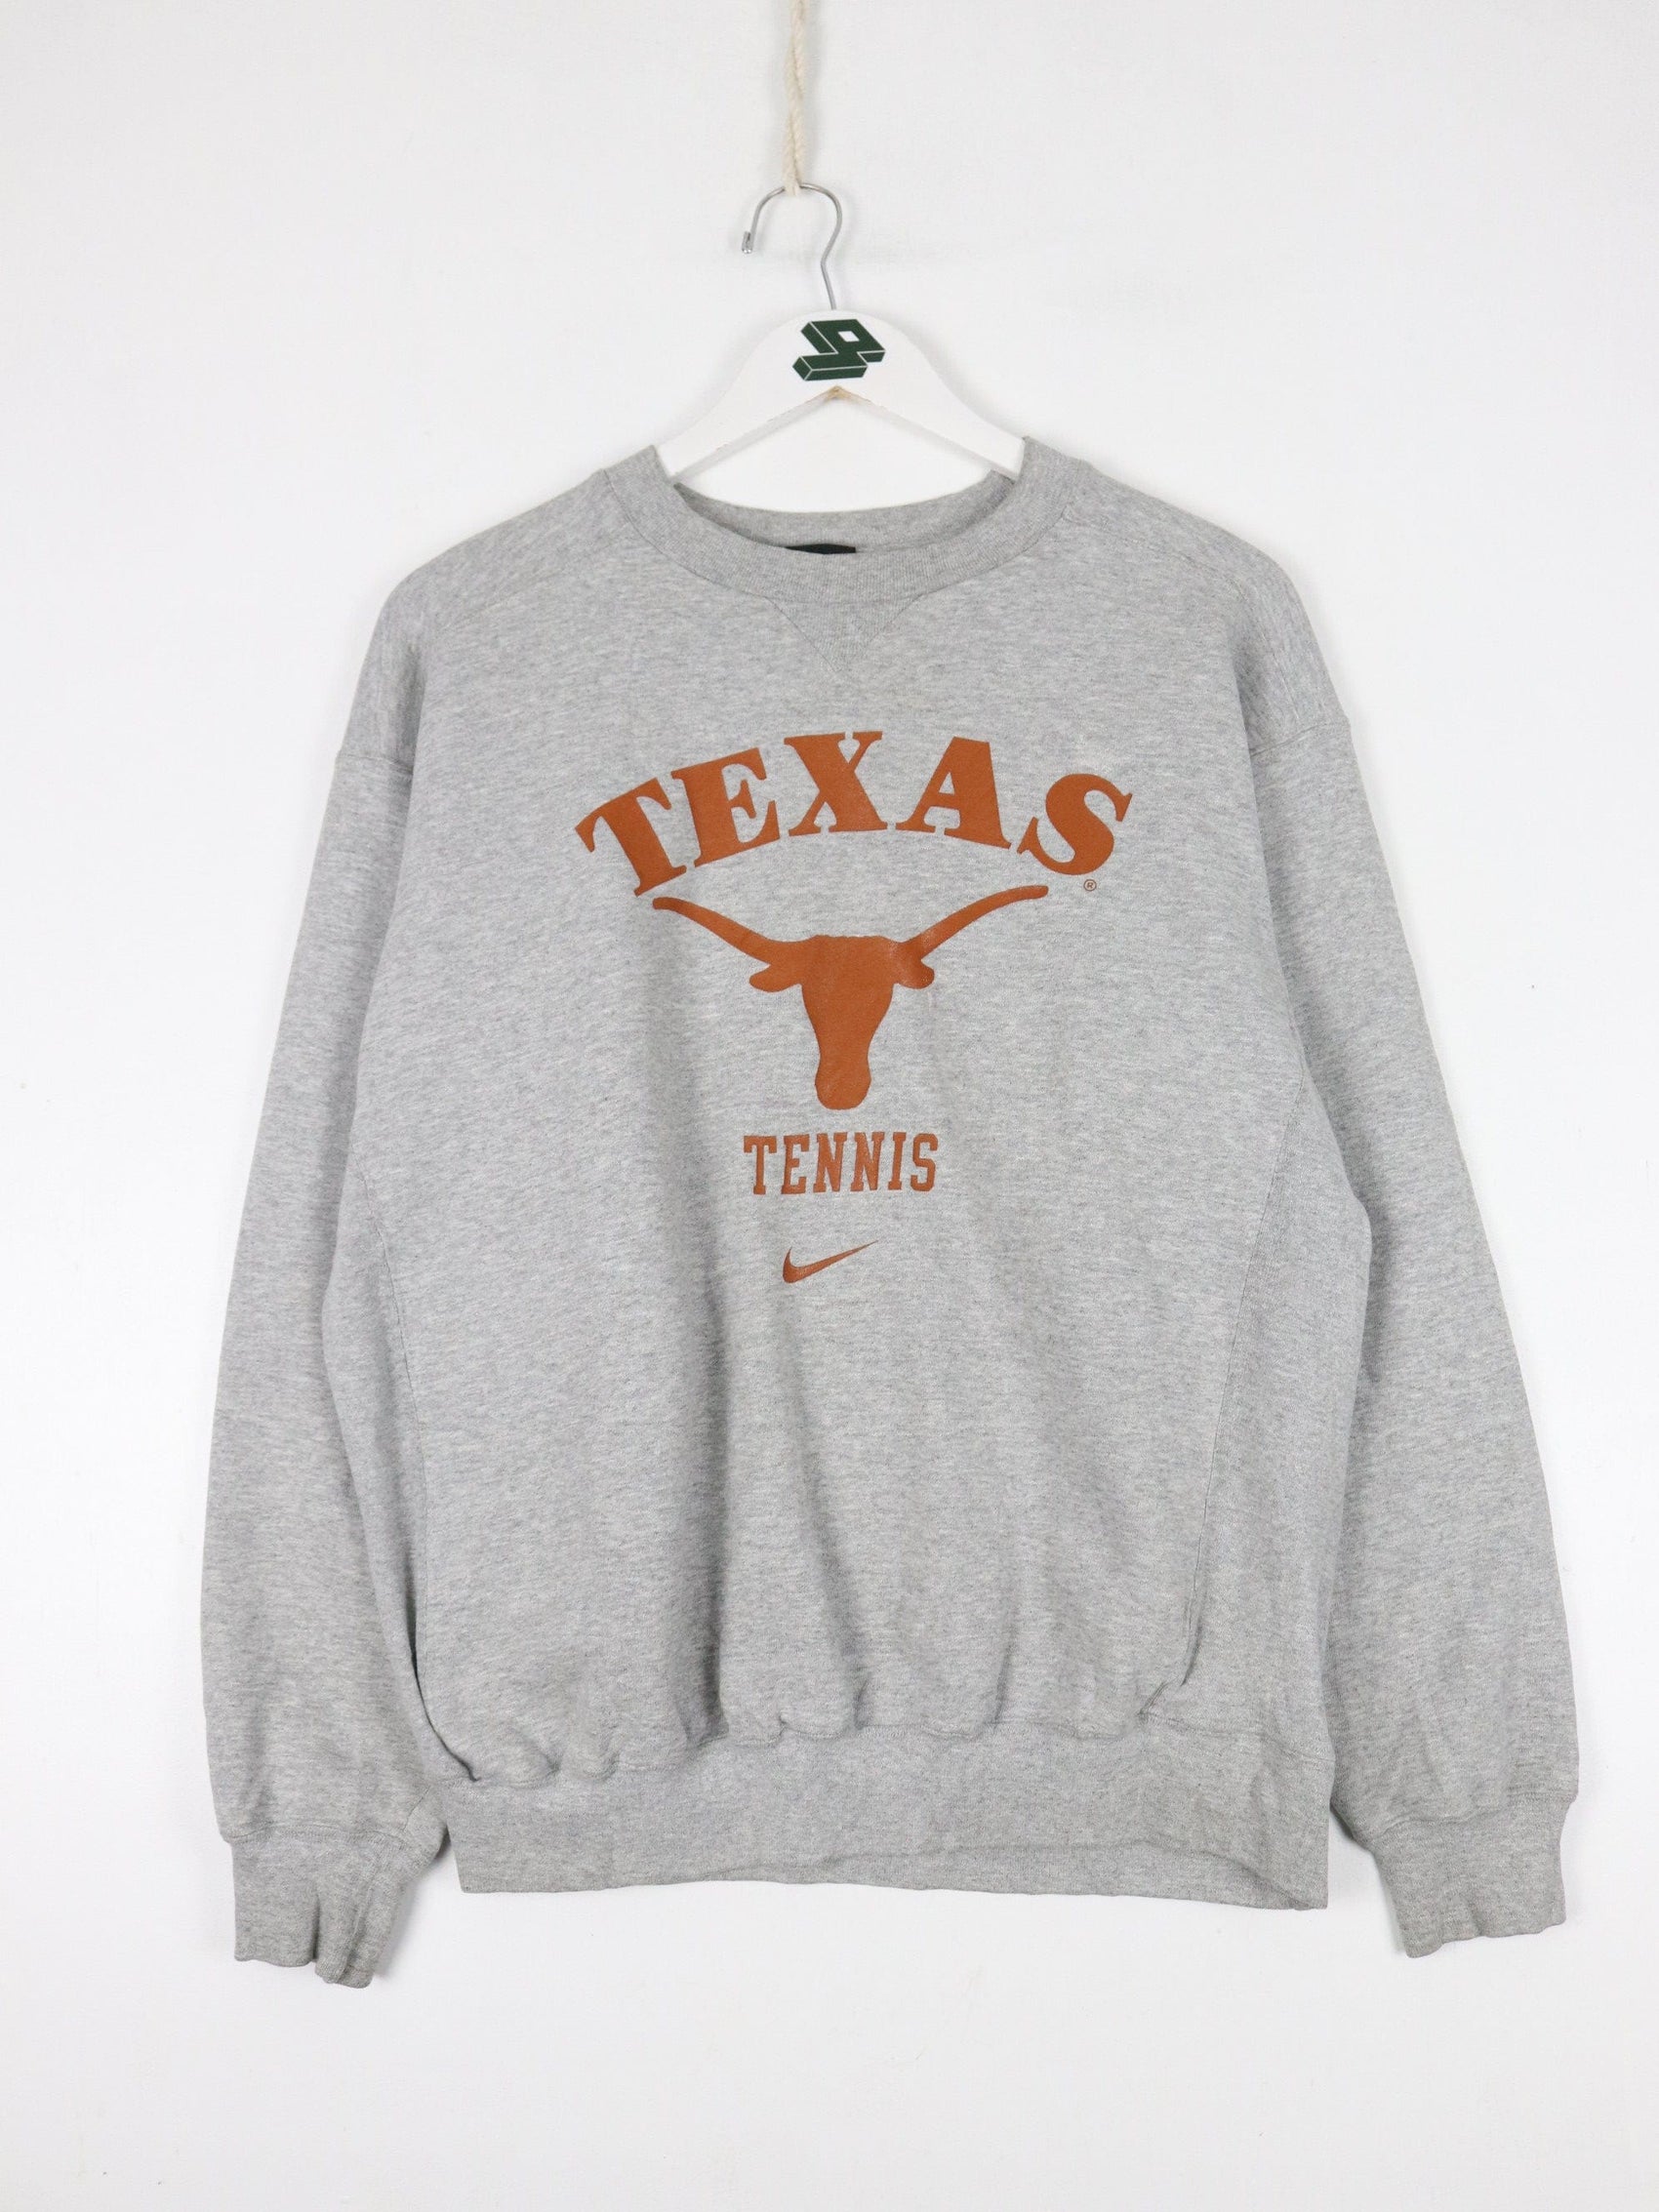 Nike Sweatshirts & Hoodies Vintage Texas Longhorns Tennis Sweatshirt Mens Small Grey Nike